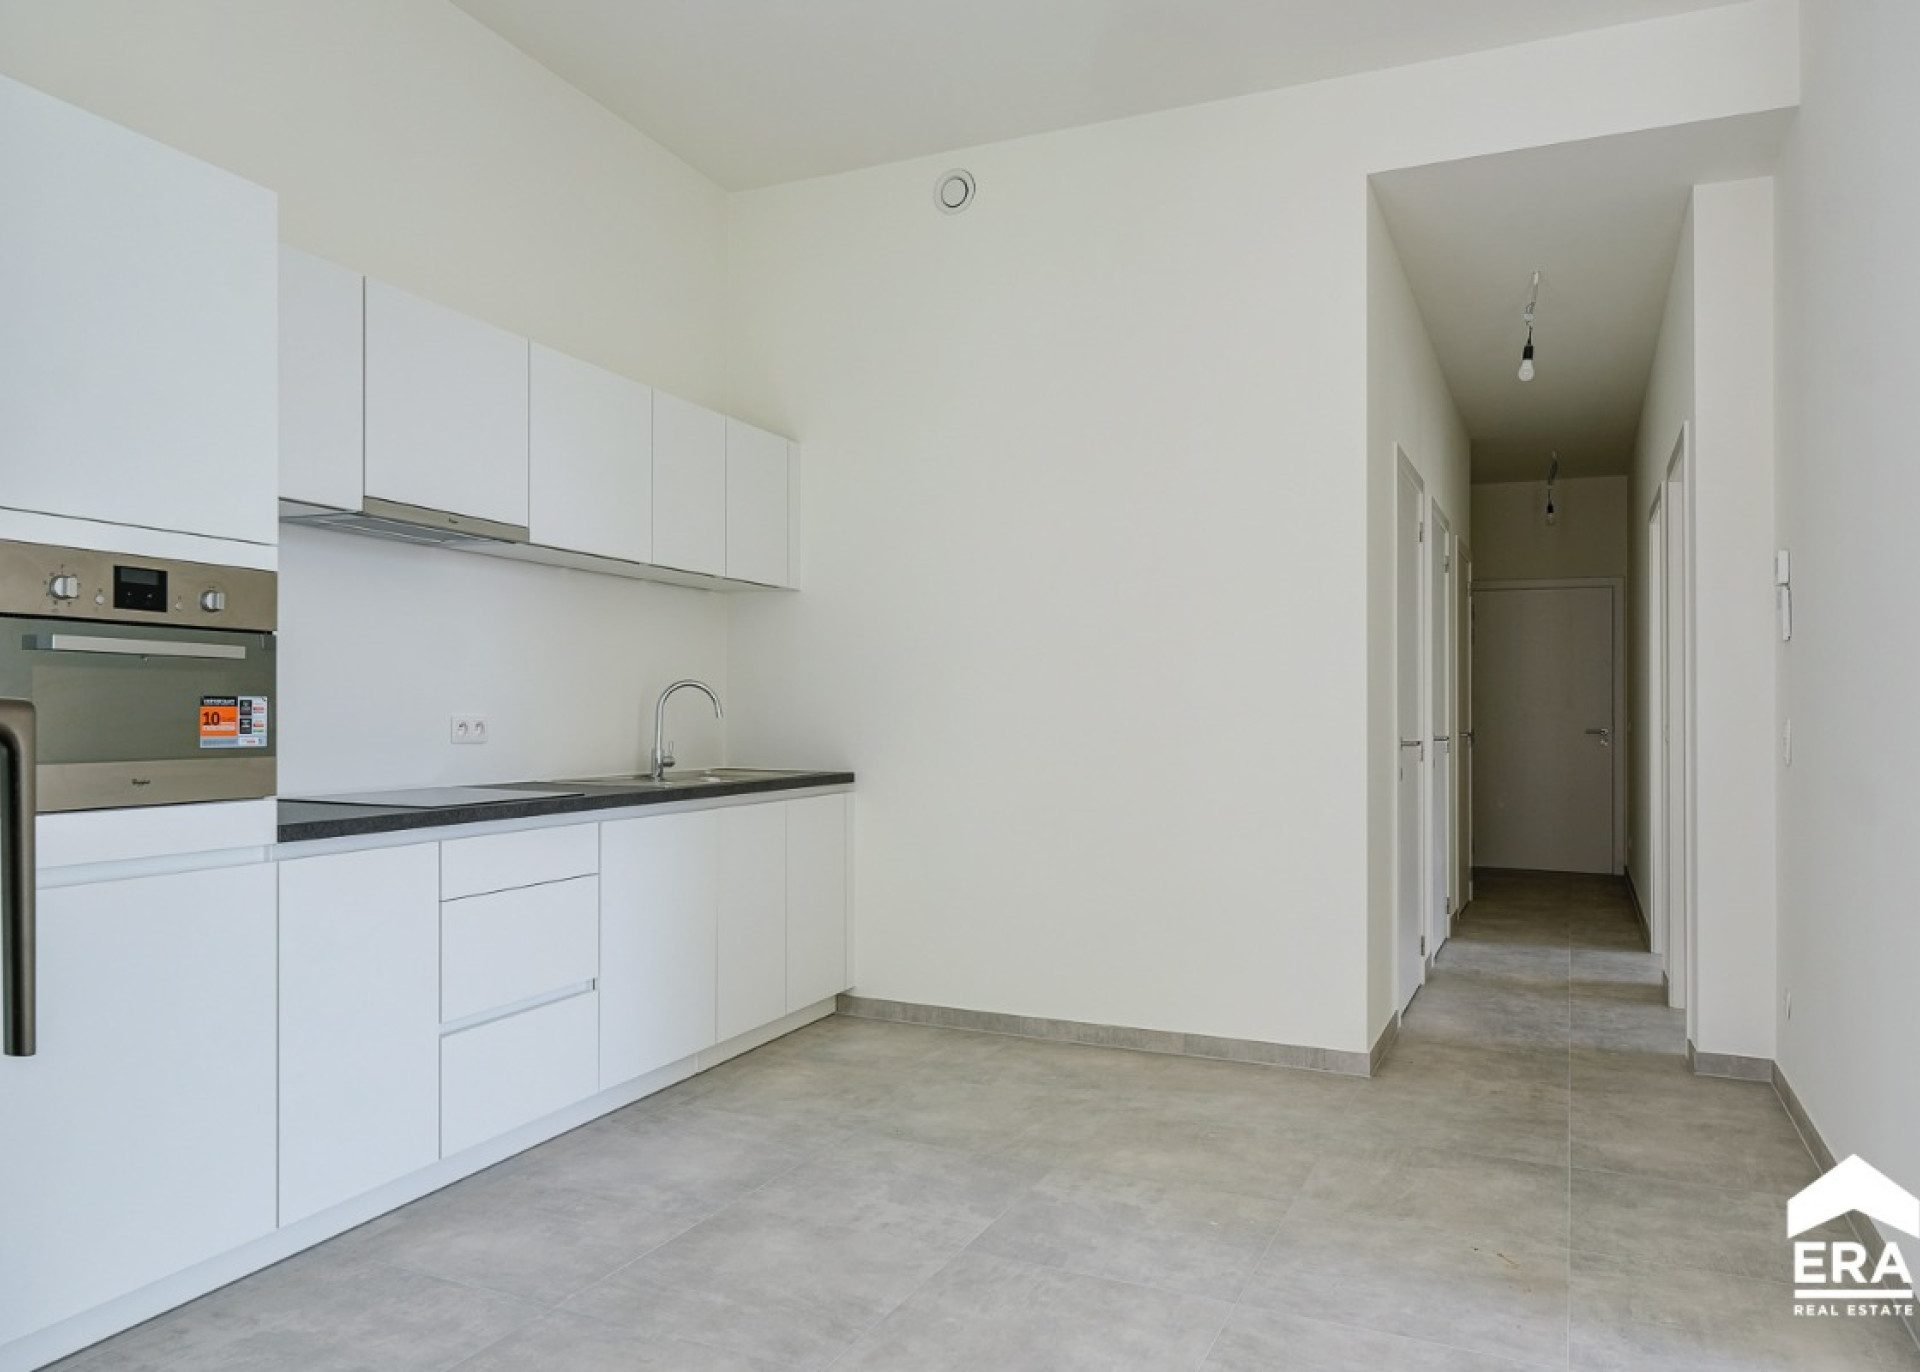 Verkopen - Nieuwbouw appartement - Hasselt - Immo - ERA Nobis(10).jpg